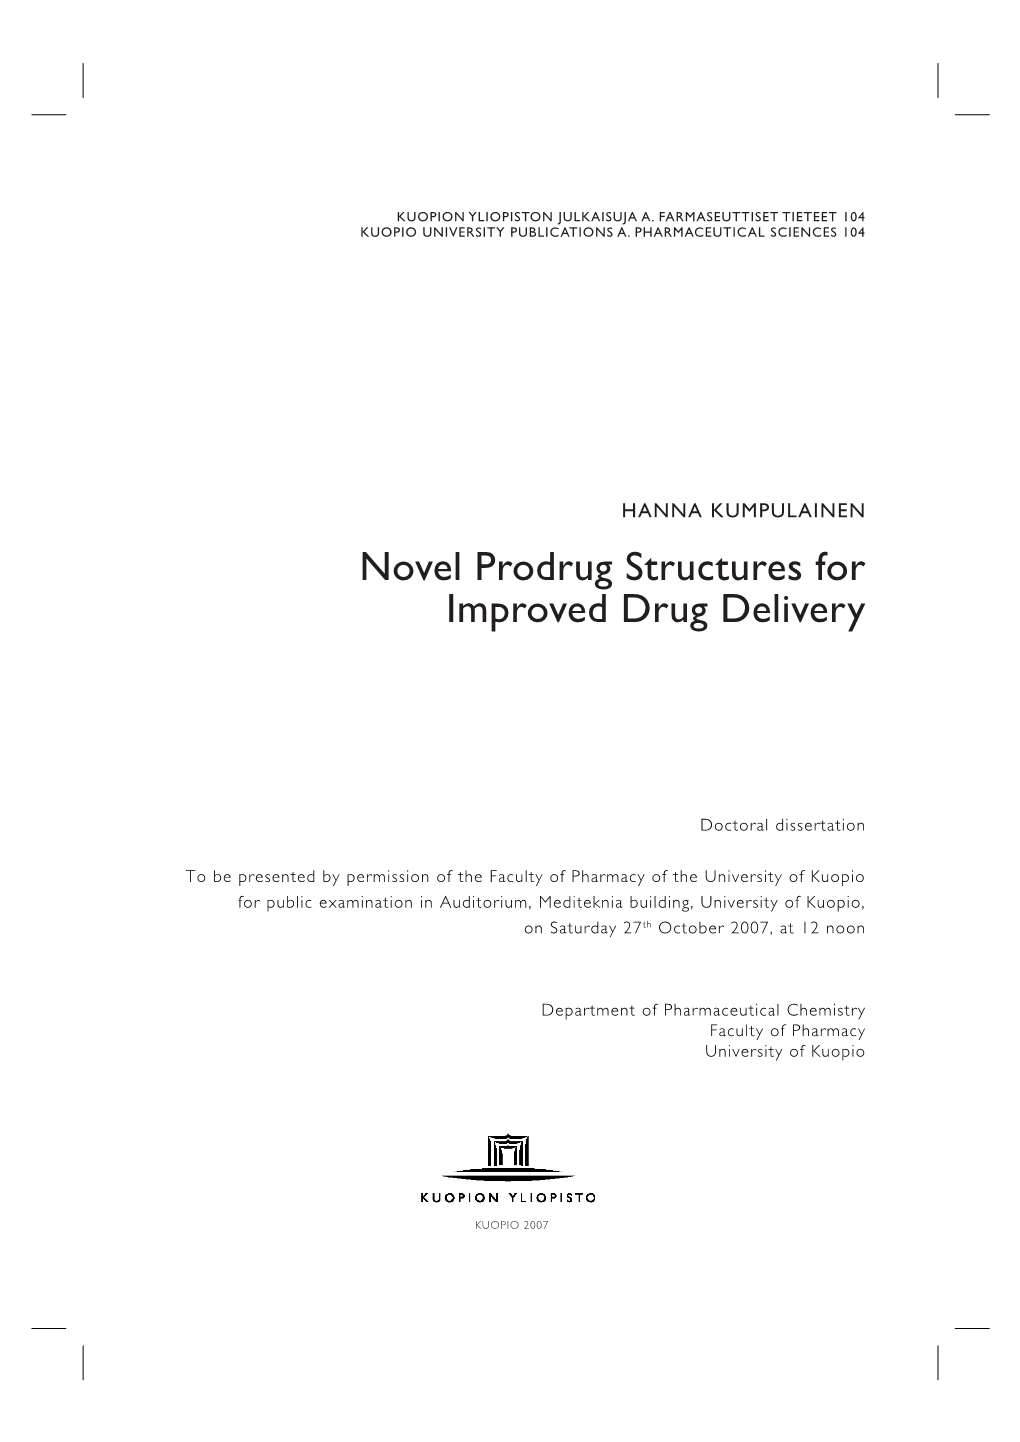 Novel Prodrug Structures for Improved Drug Delivery